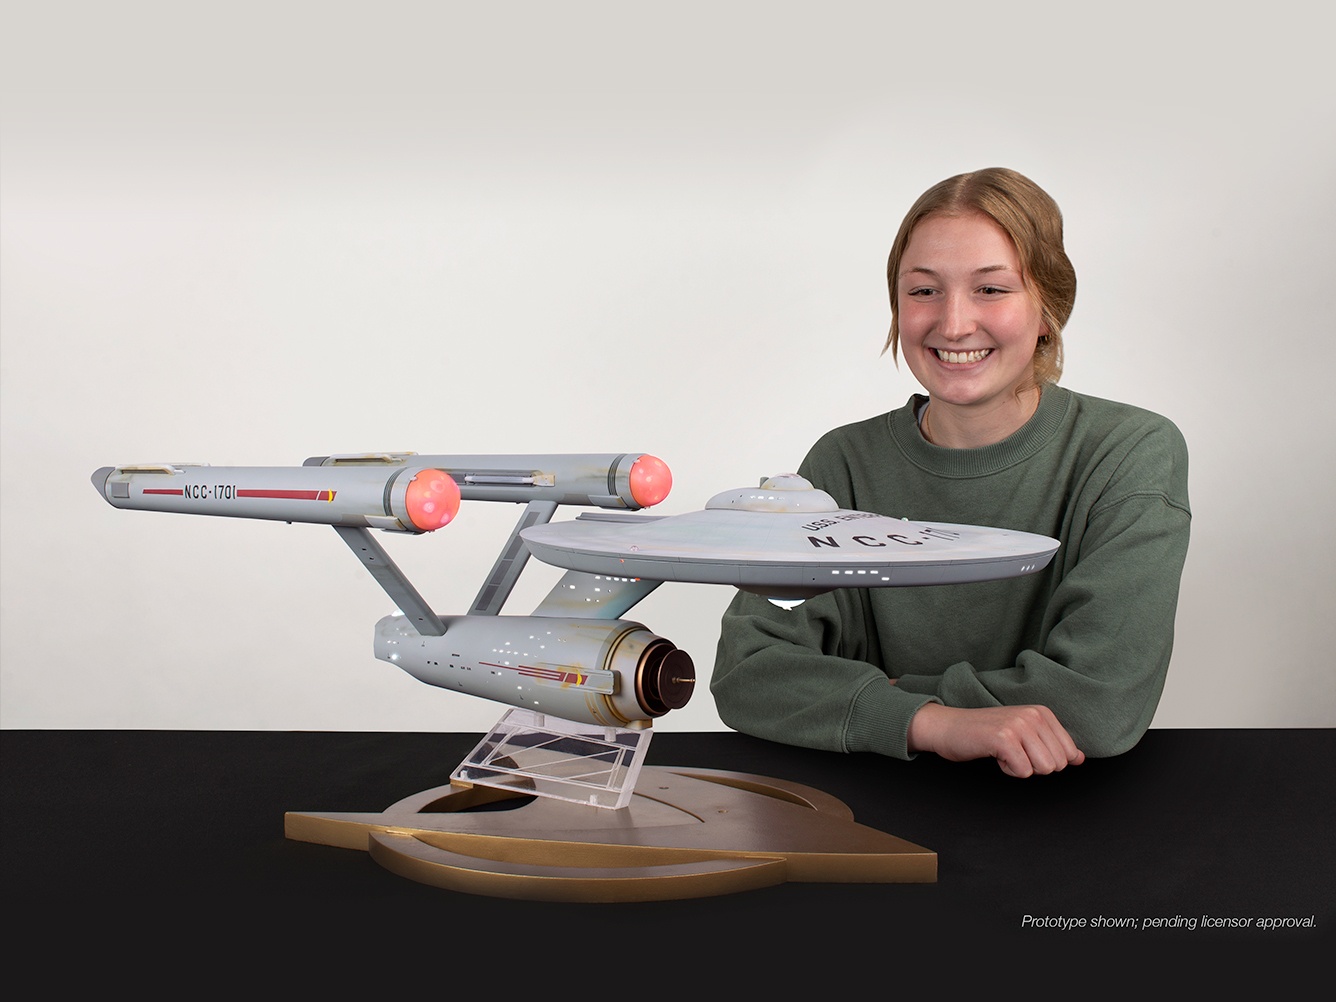 Star Trek Starship Enterprise Studio Model